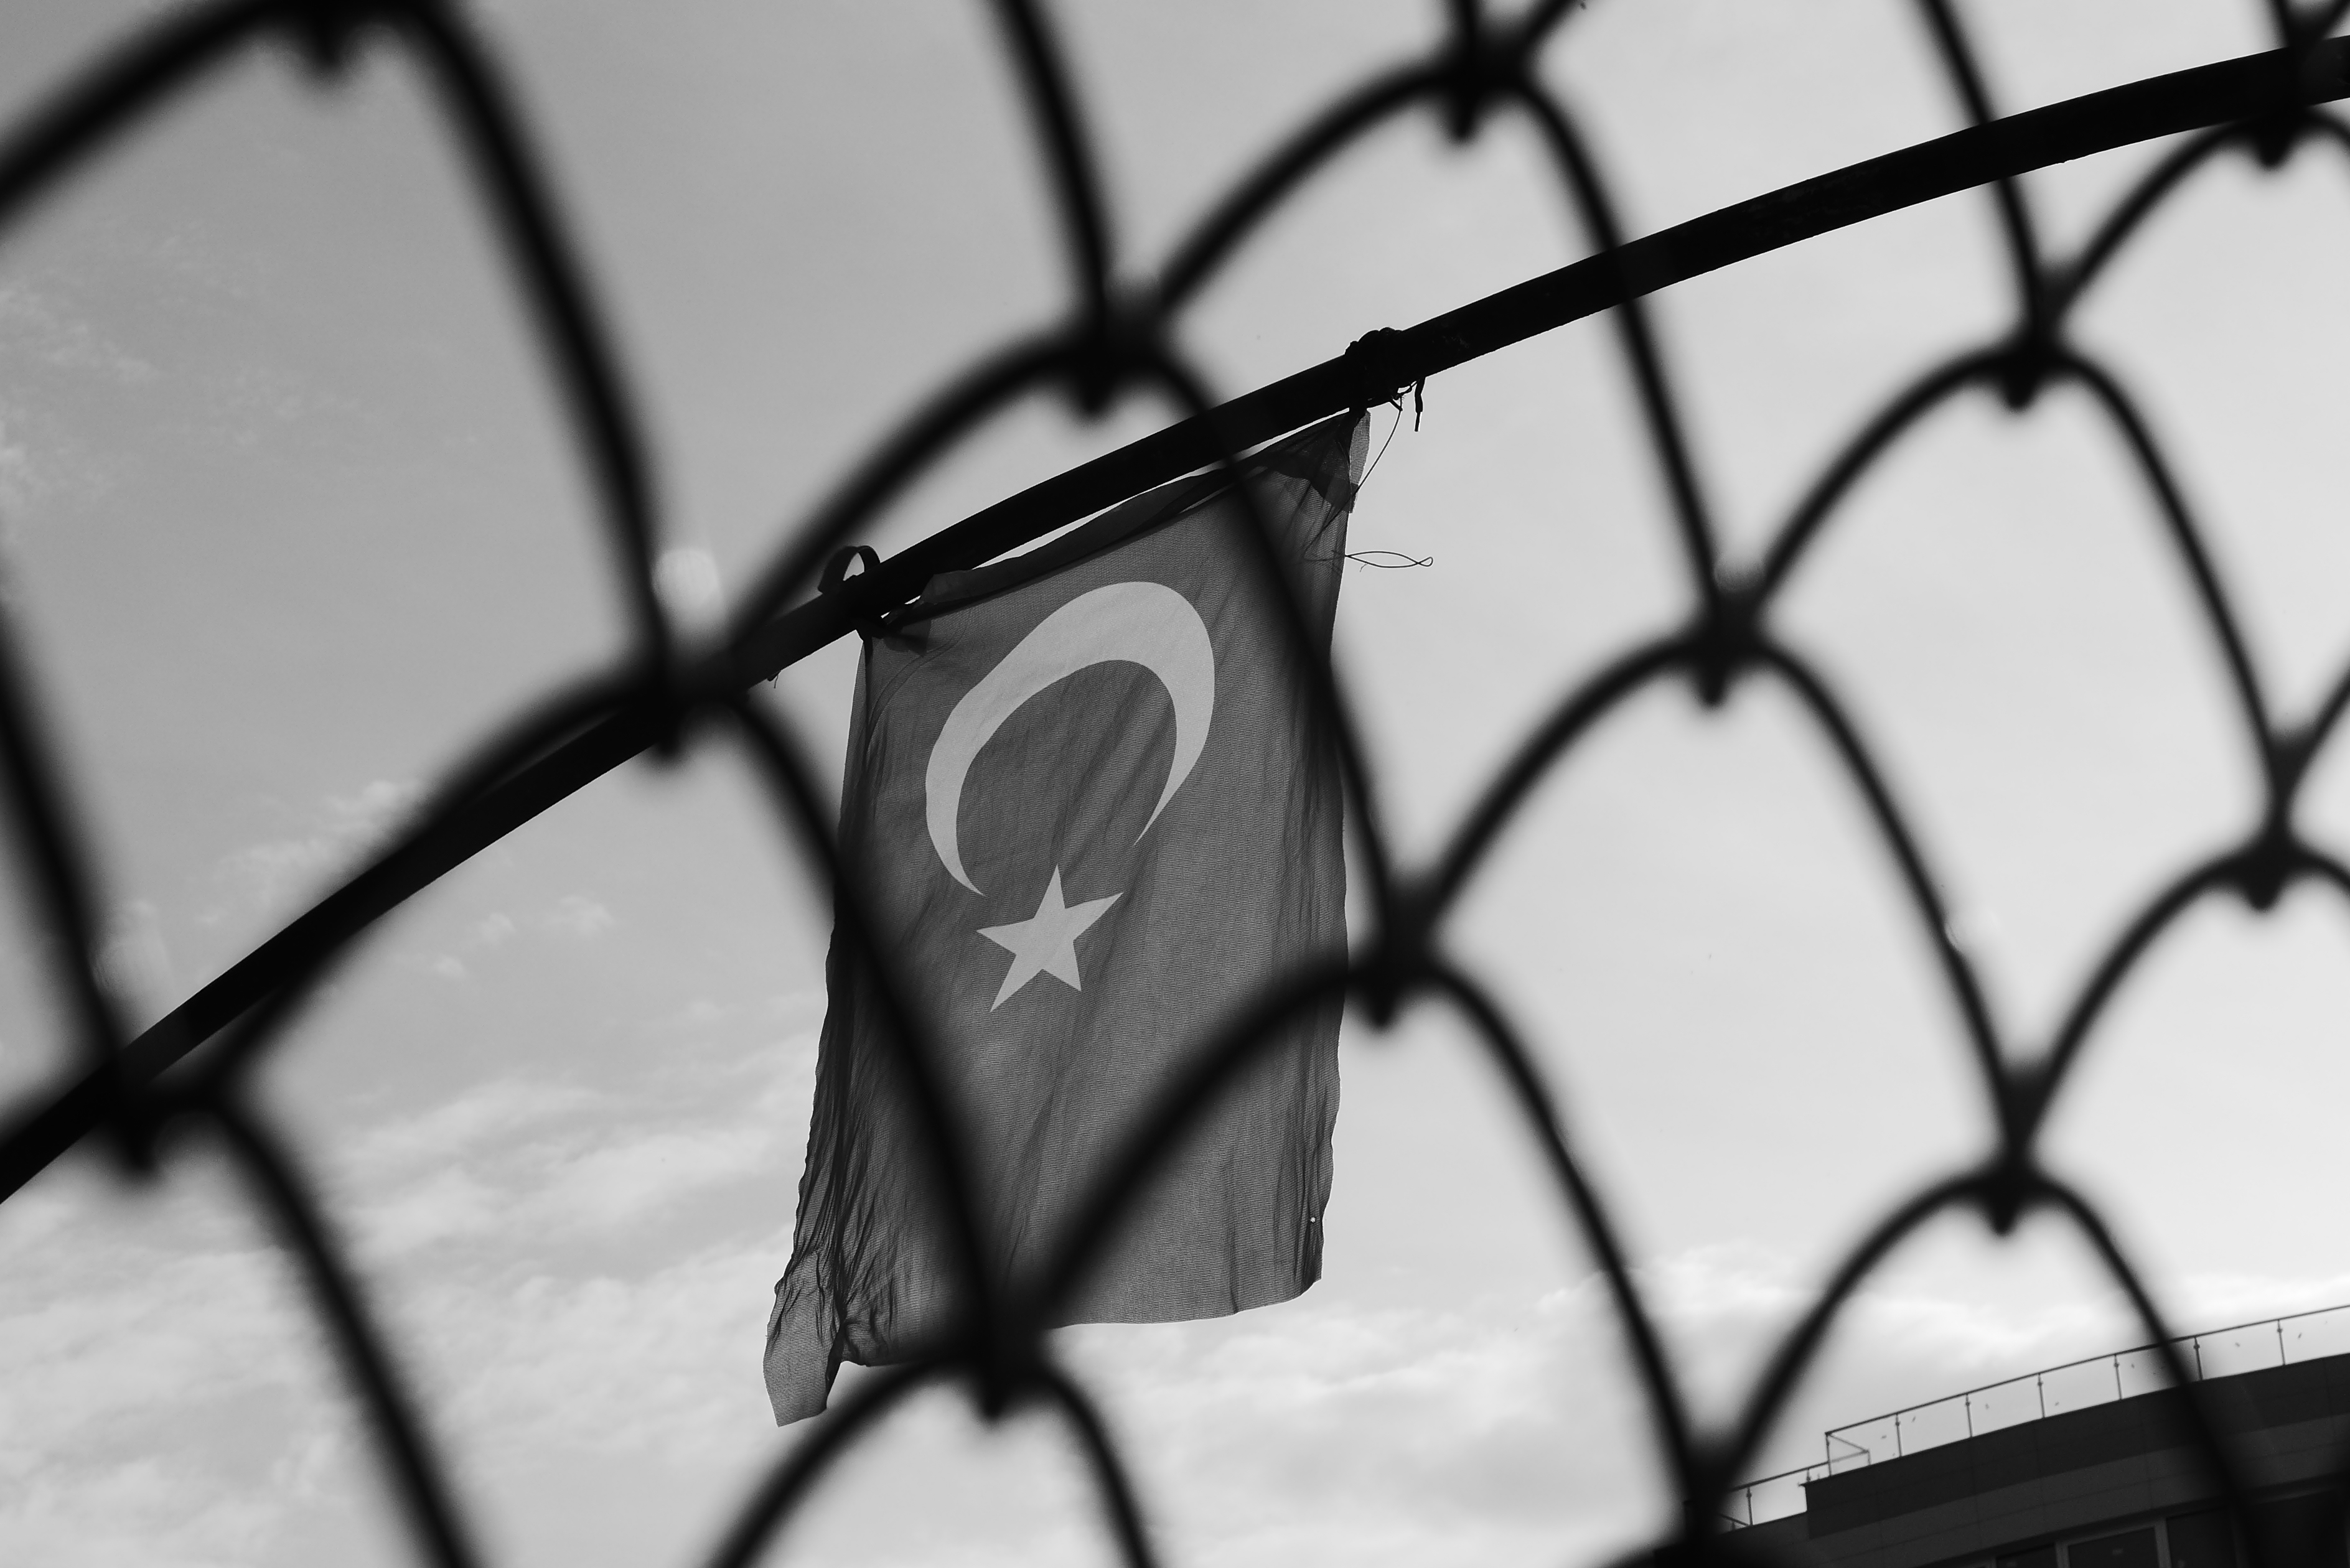 Symbolträchtig: Aktuell empfiehlt sich die türkische Regierung nicht gerade als Mitglied eines demokratischen Europas